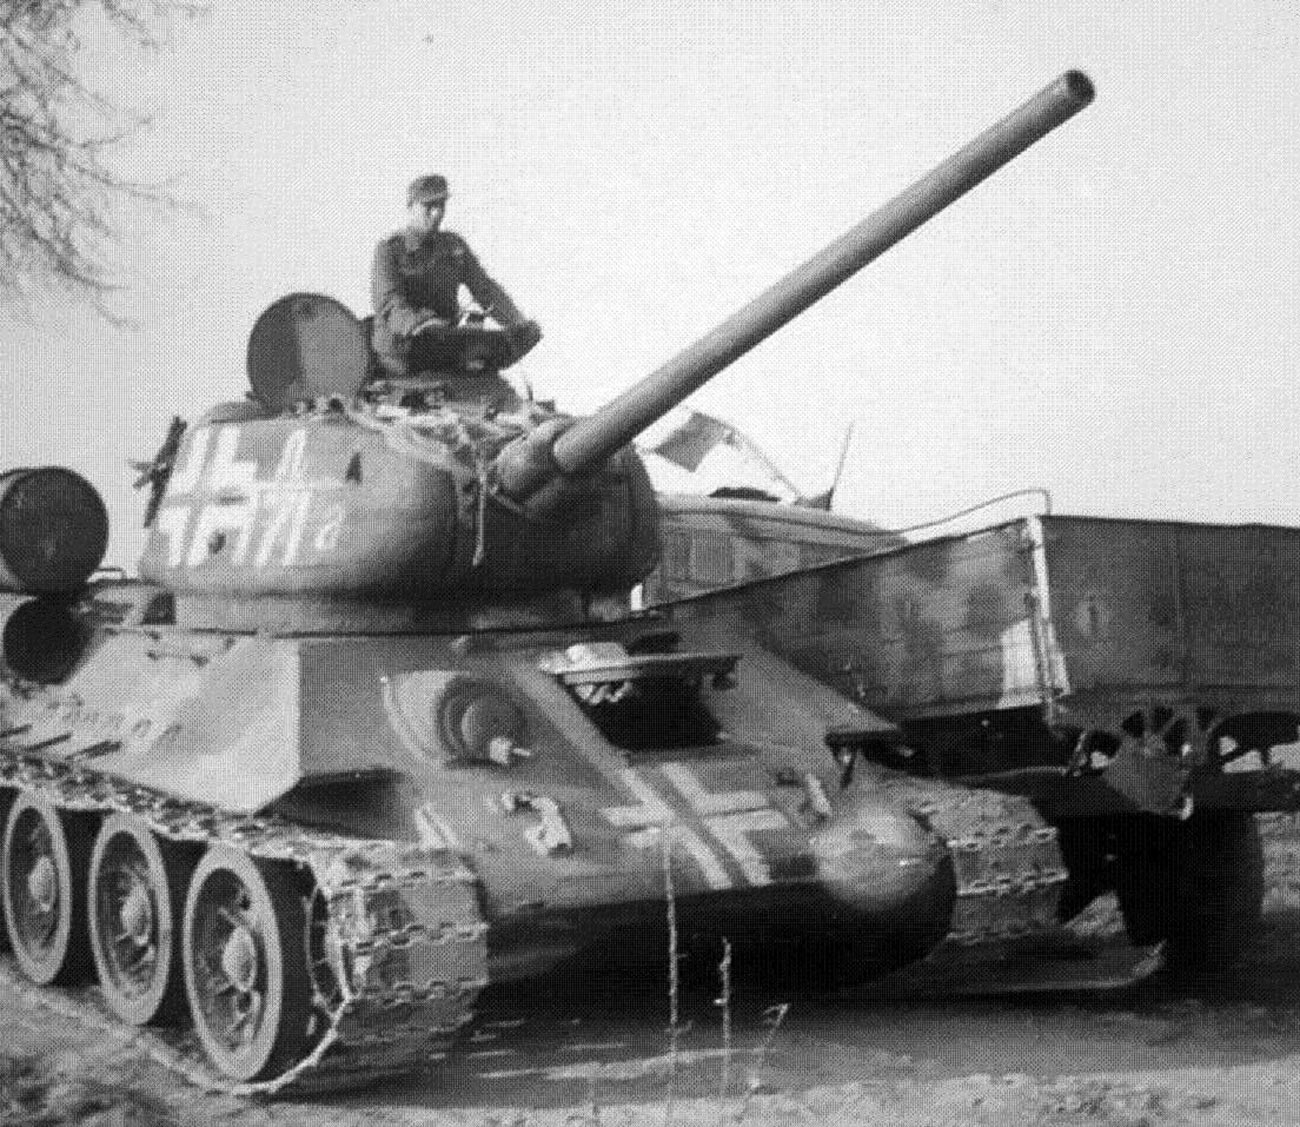 Т-34-85 